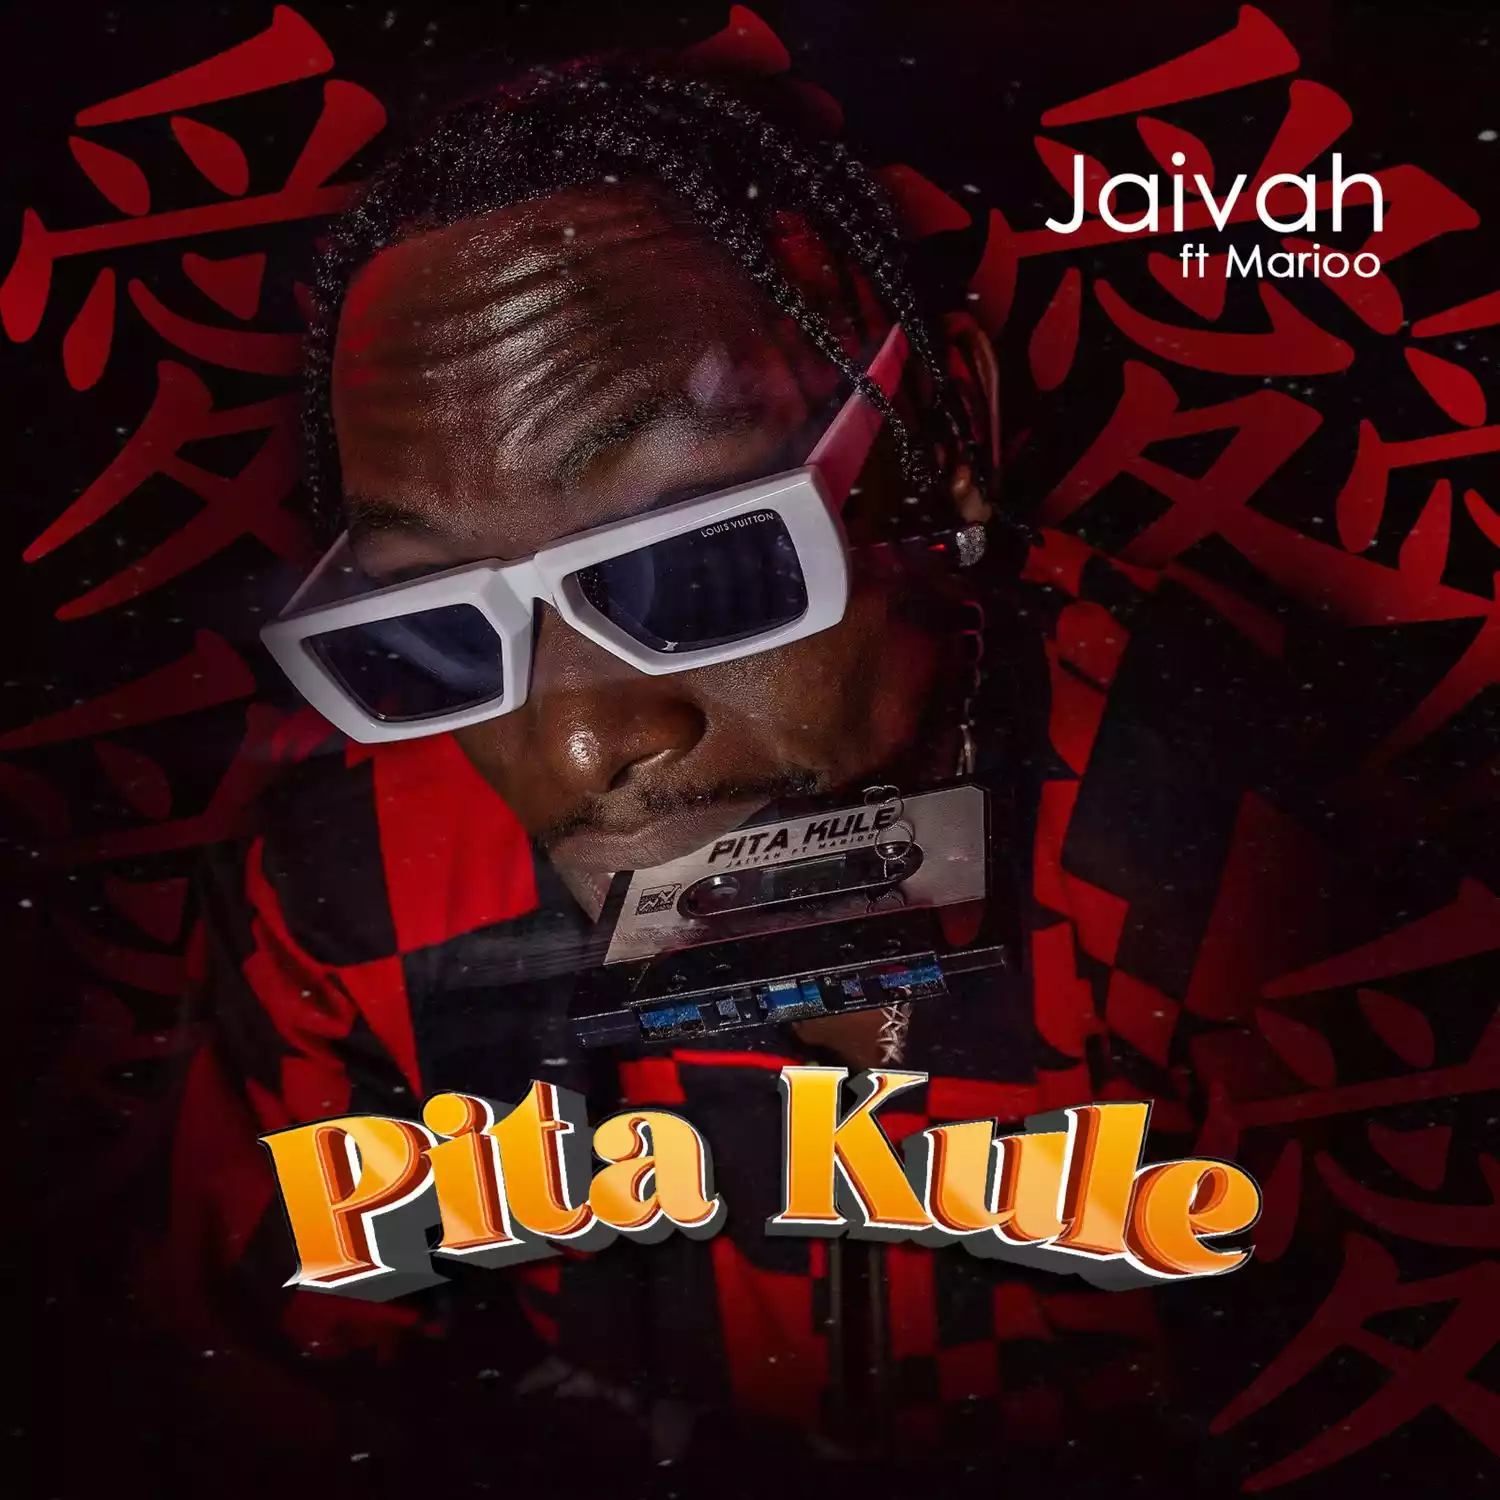 Jaivah ft Marioo Pita Kule Mp3 Download